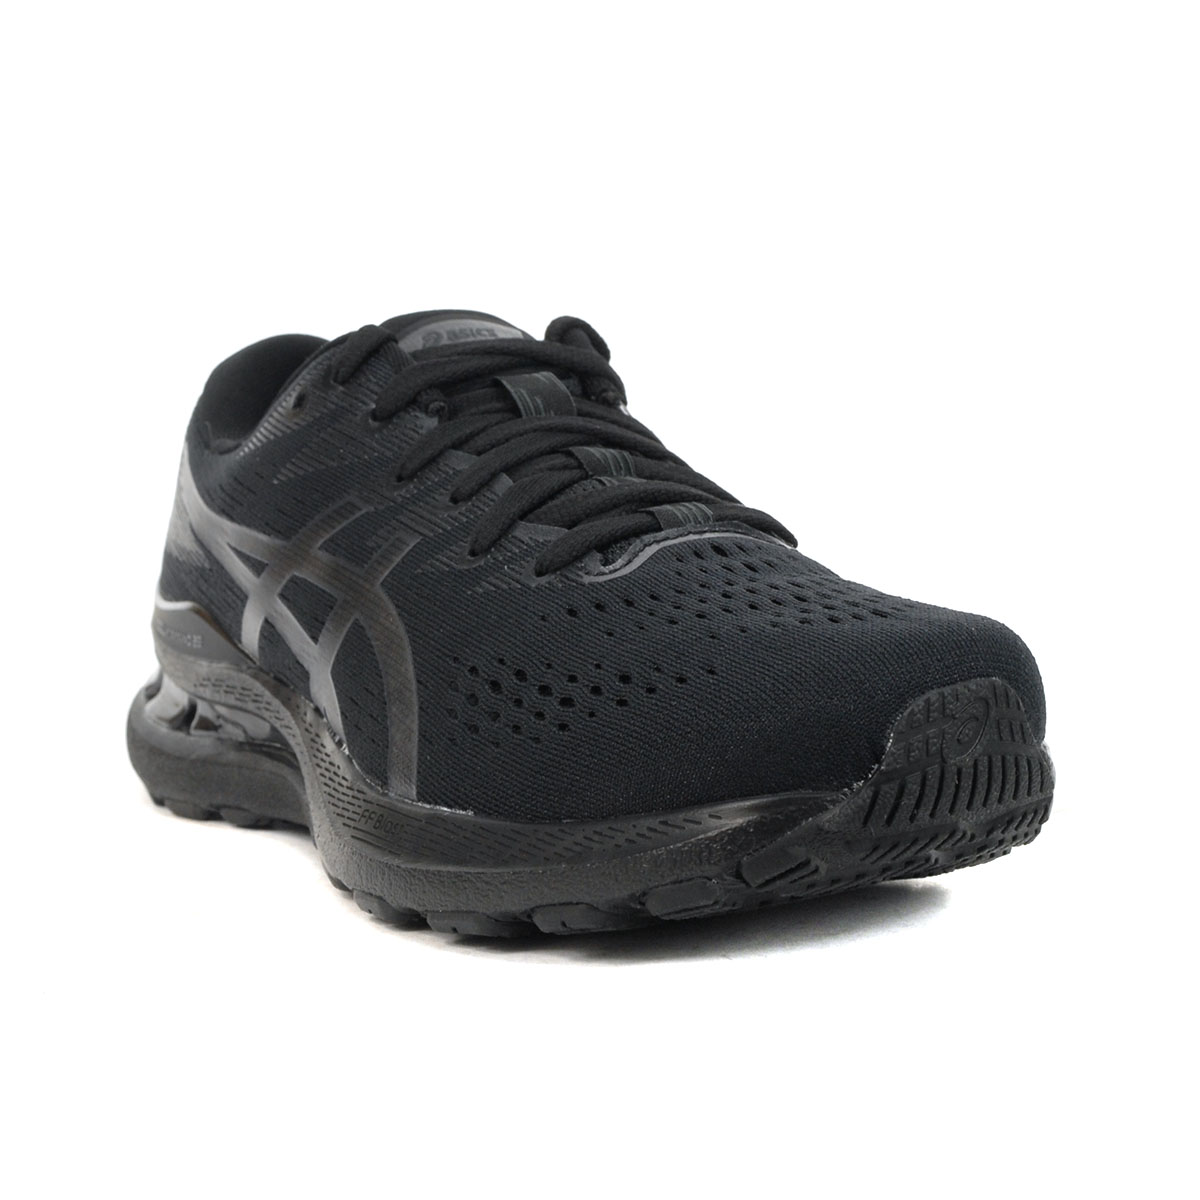 ASICS Men's Gel-Kayano 28 Black/Graphite Grey Running Shoes